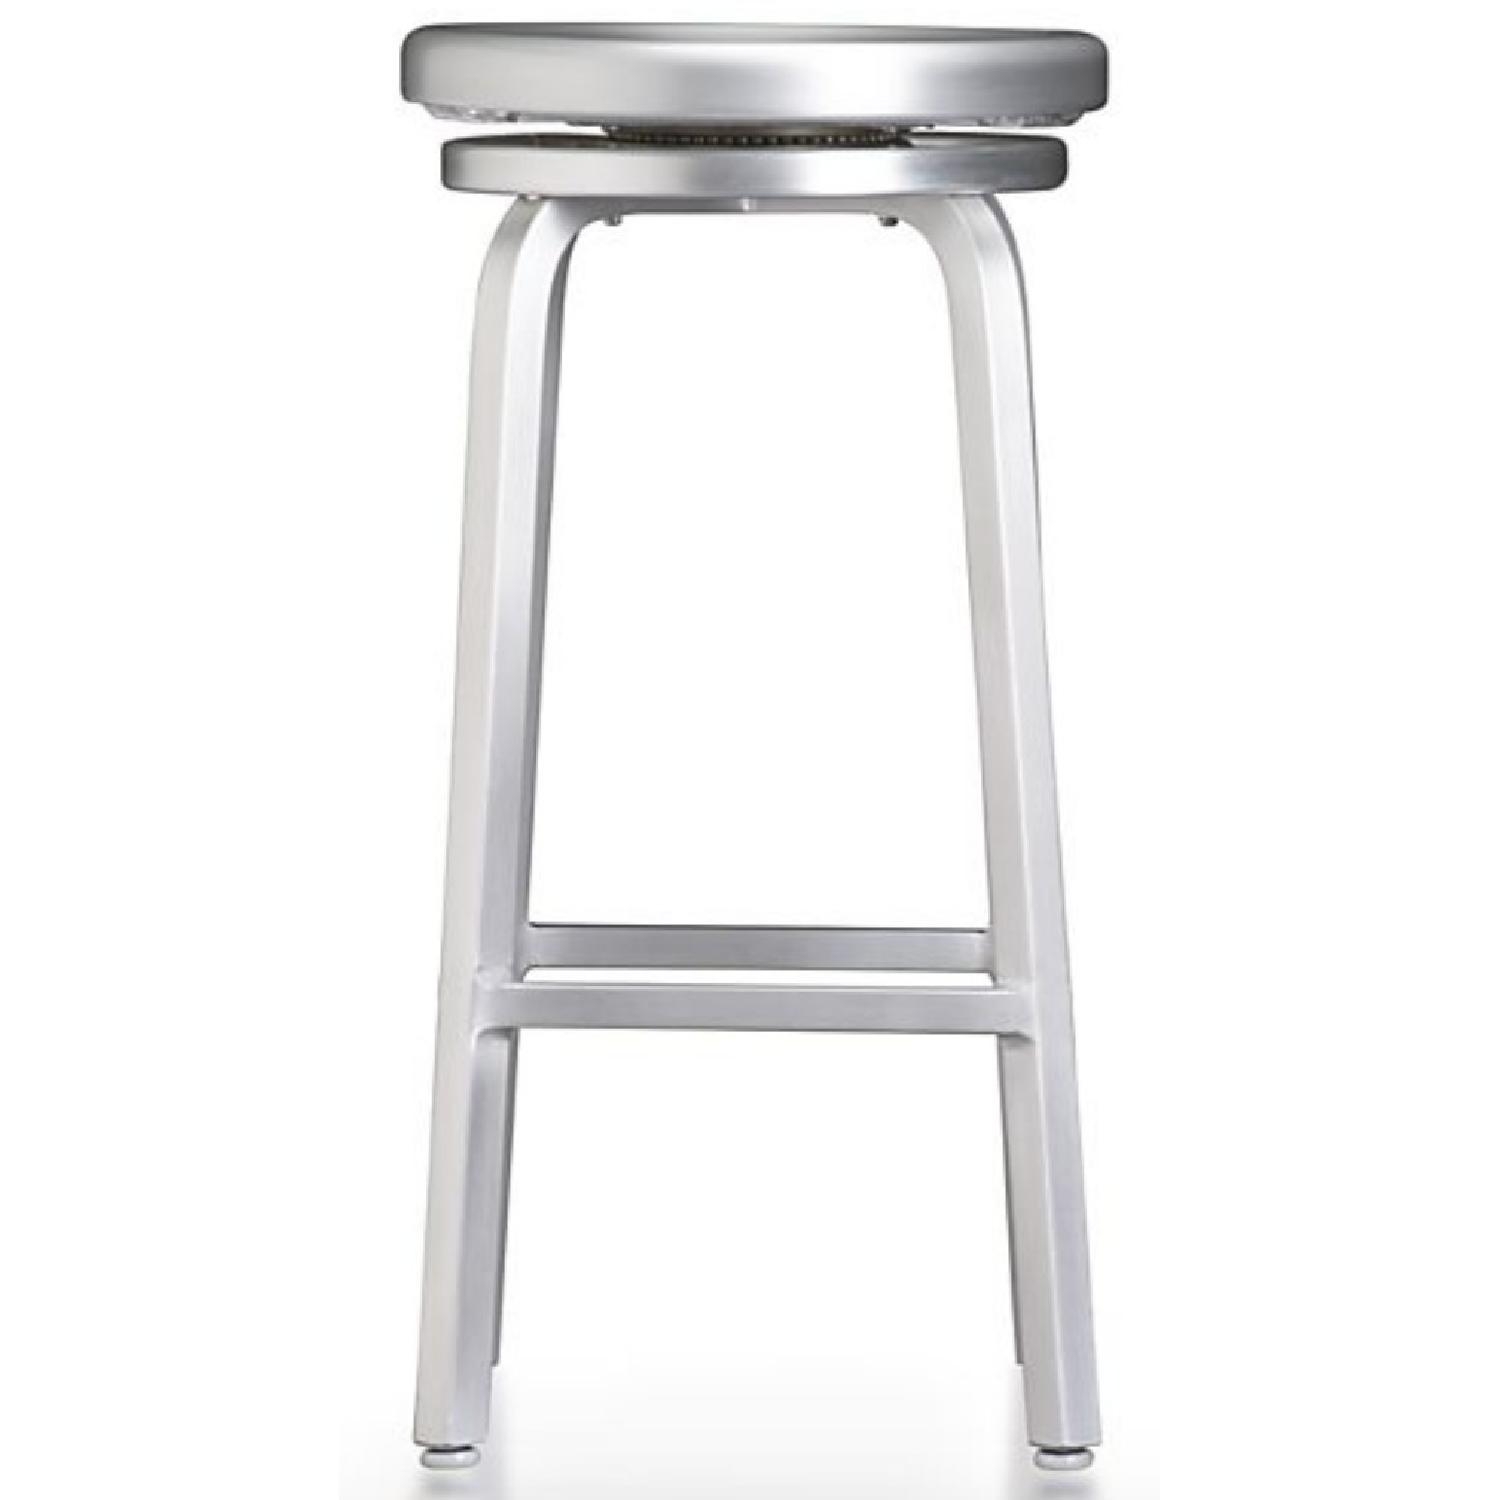 Aluminum brushed bar stools